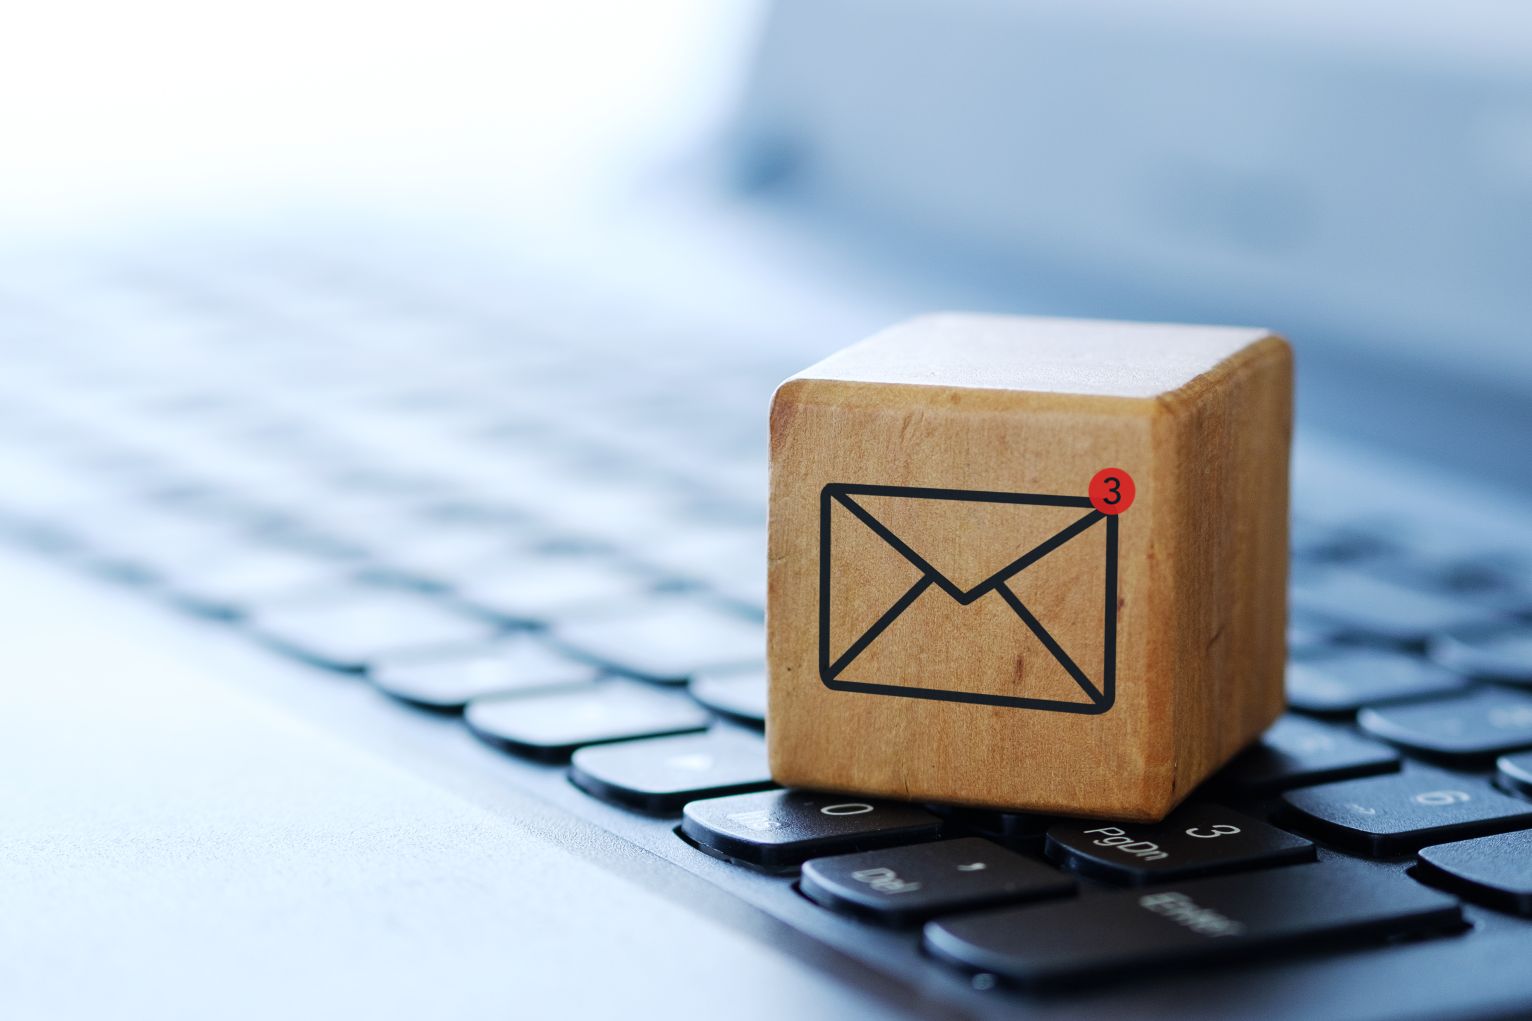 Inbox Cube Placed On A Keyboard, Digital Marketing